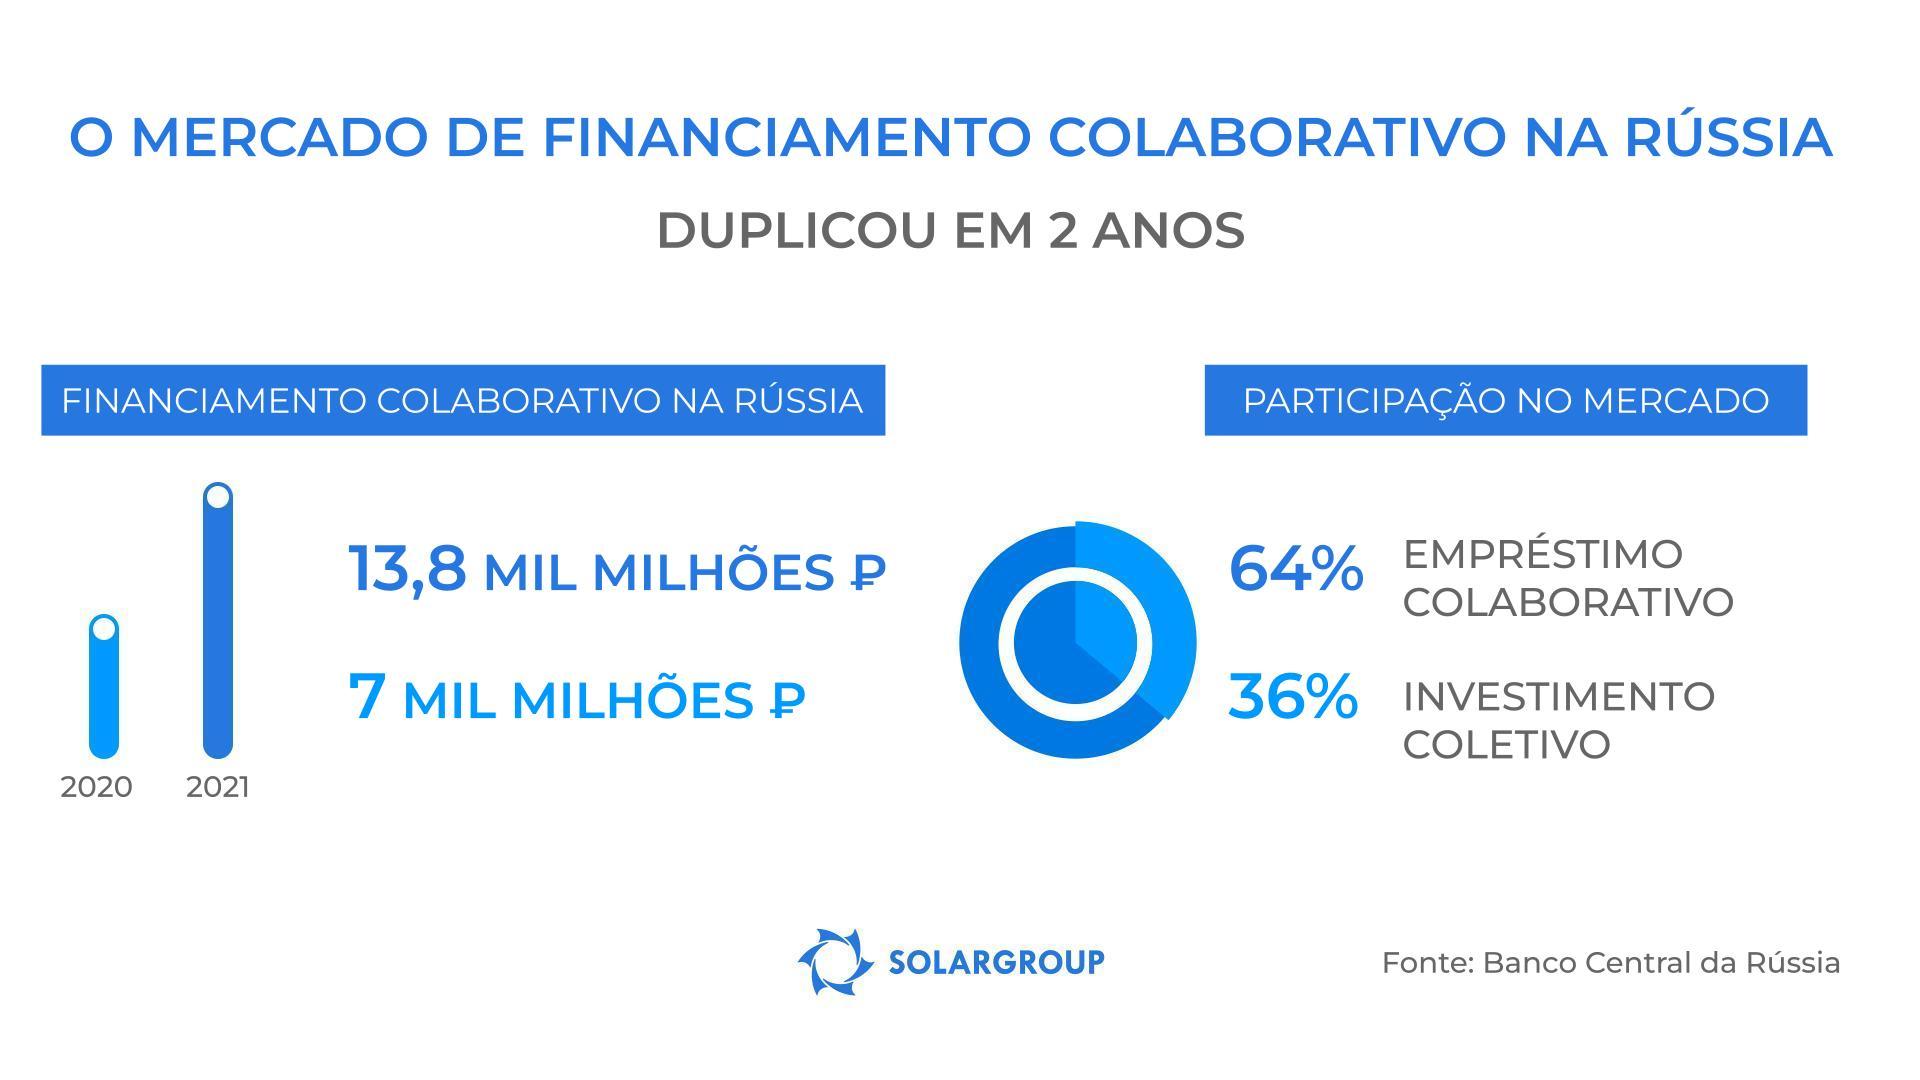 O mercado de financiamento colaborativo na Rússia mais do que duplicou em 2021!